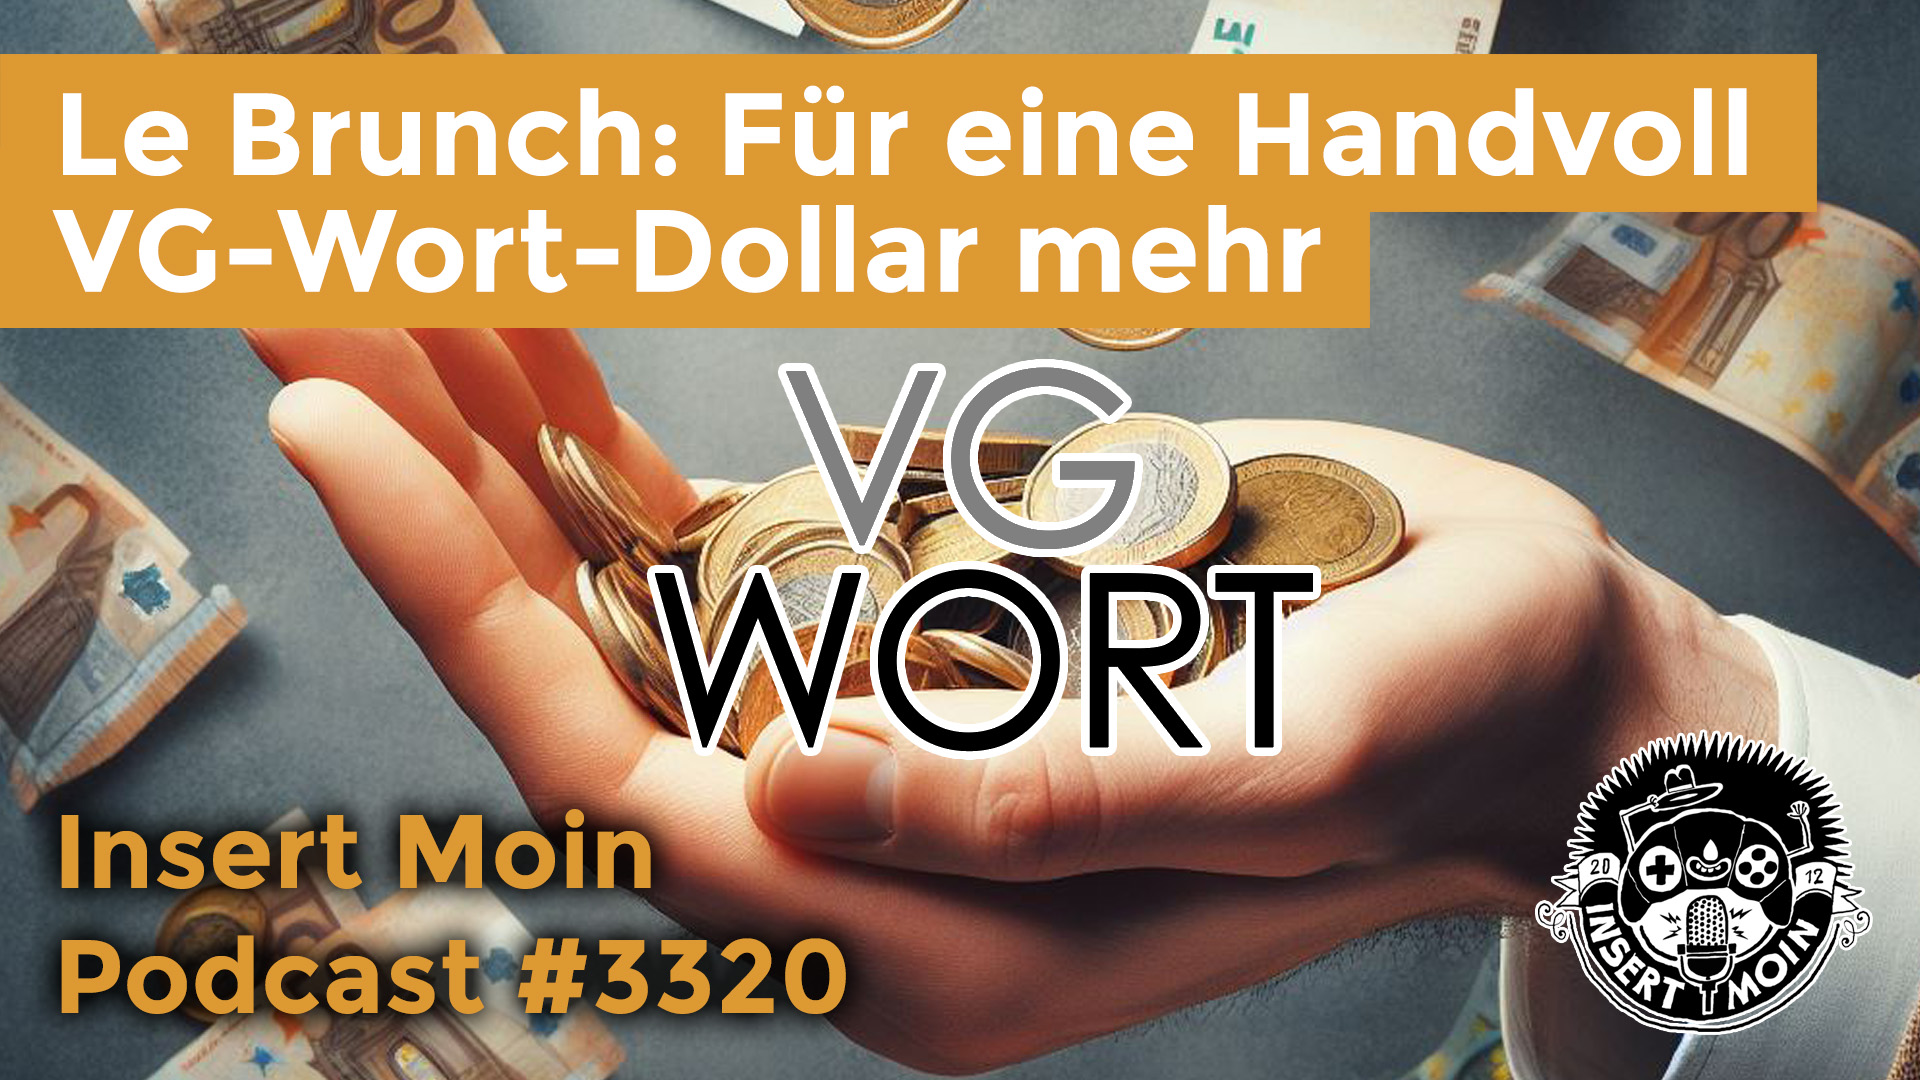 Le Brunch: Für eine Handvoll VG-Wort-Dollar mehr